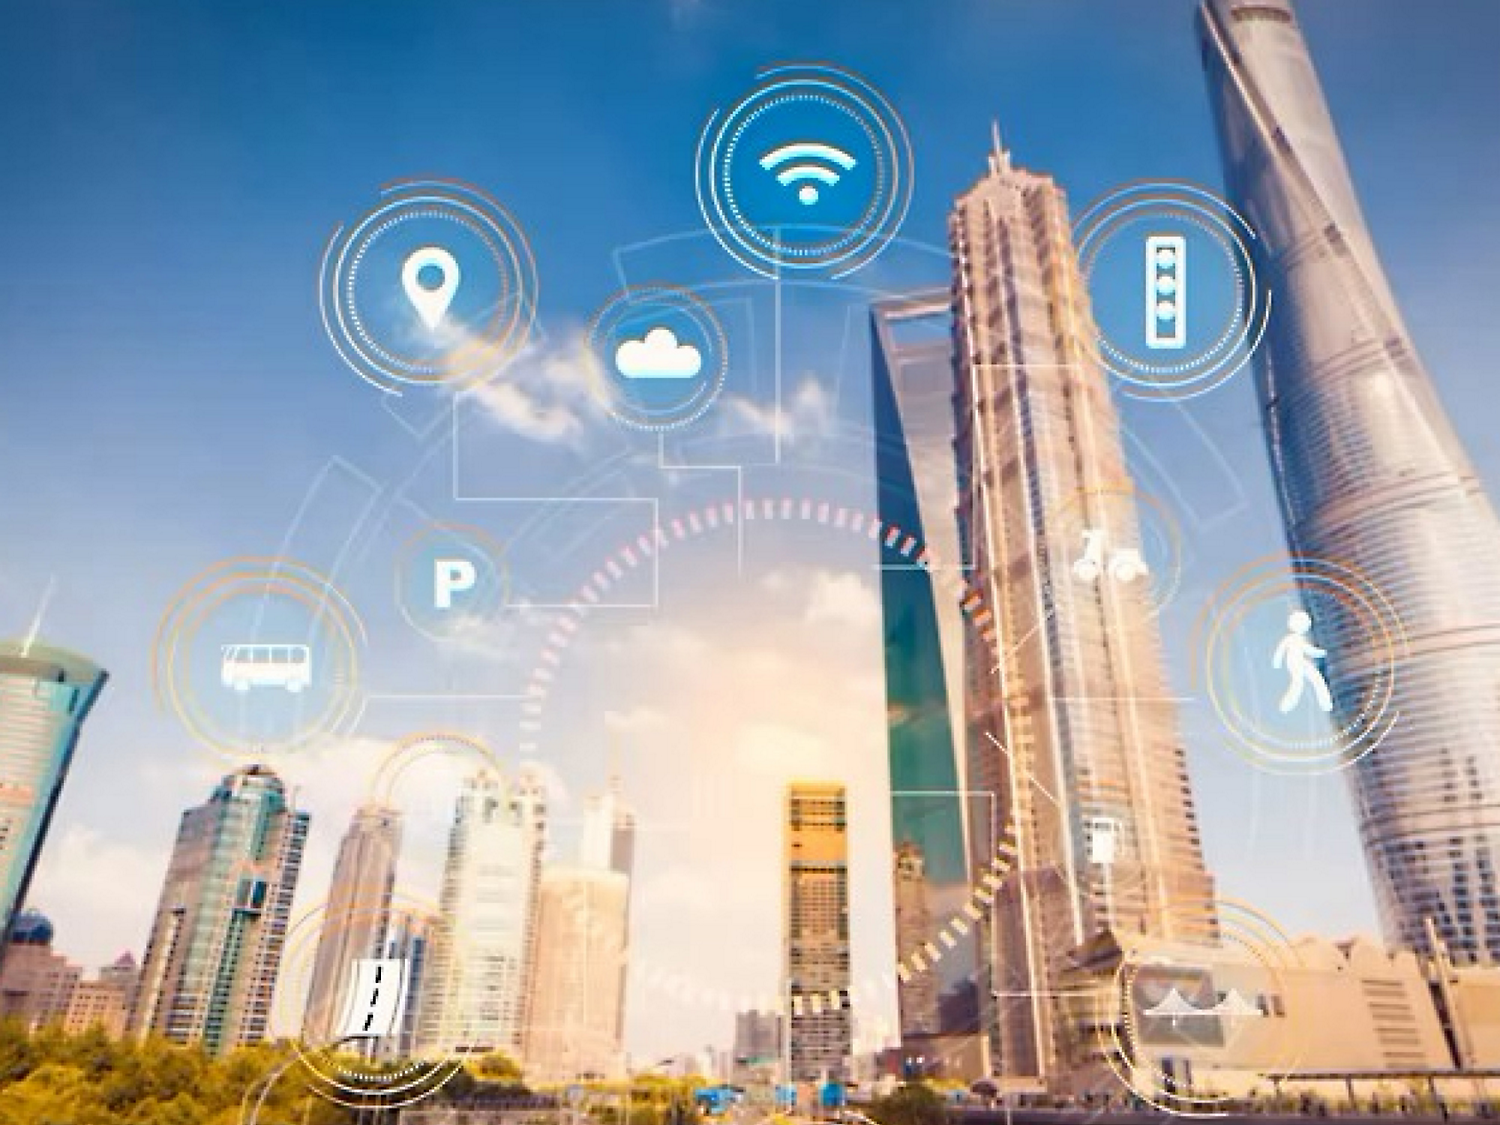 Иллюстрация интеллектуального города с цифровыми значками, обозначающими Wi-Fi, облачные вычисления и другие технологии, с небоскребами.